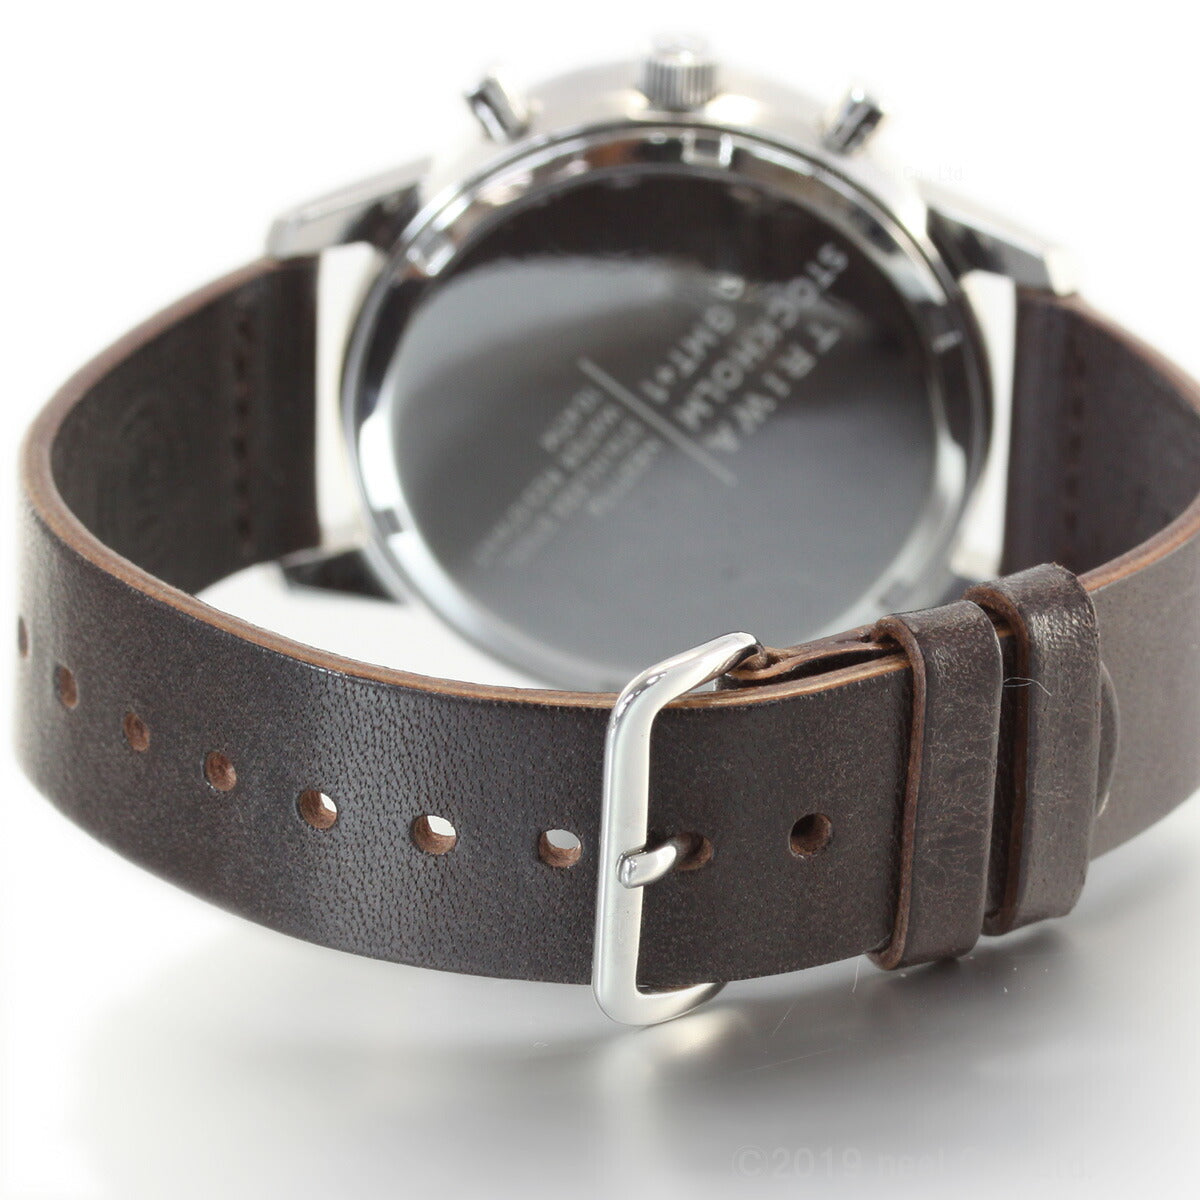 トリワ TRIWA 腕時計 メンズ レディース スモーキー ネヴィル SMOKY NEVIL クロノグラフ NEST114-CL010412